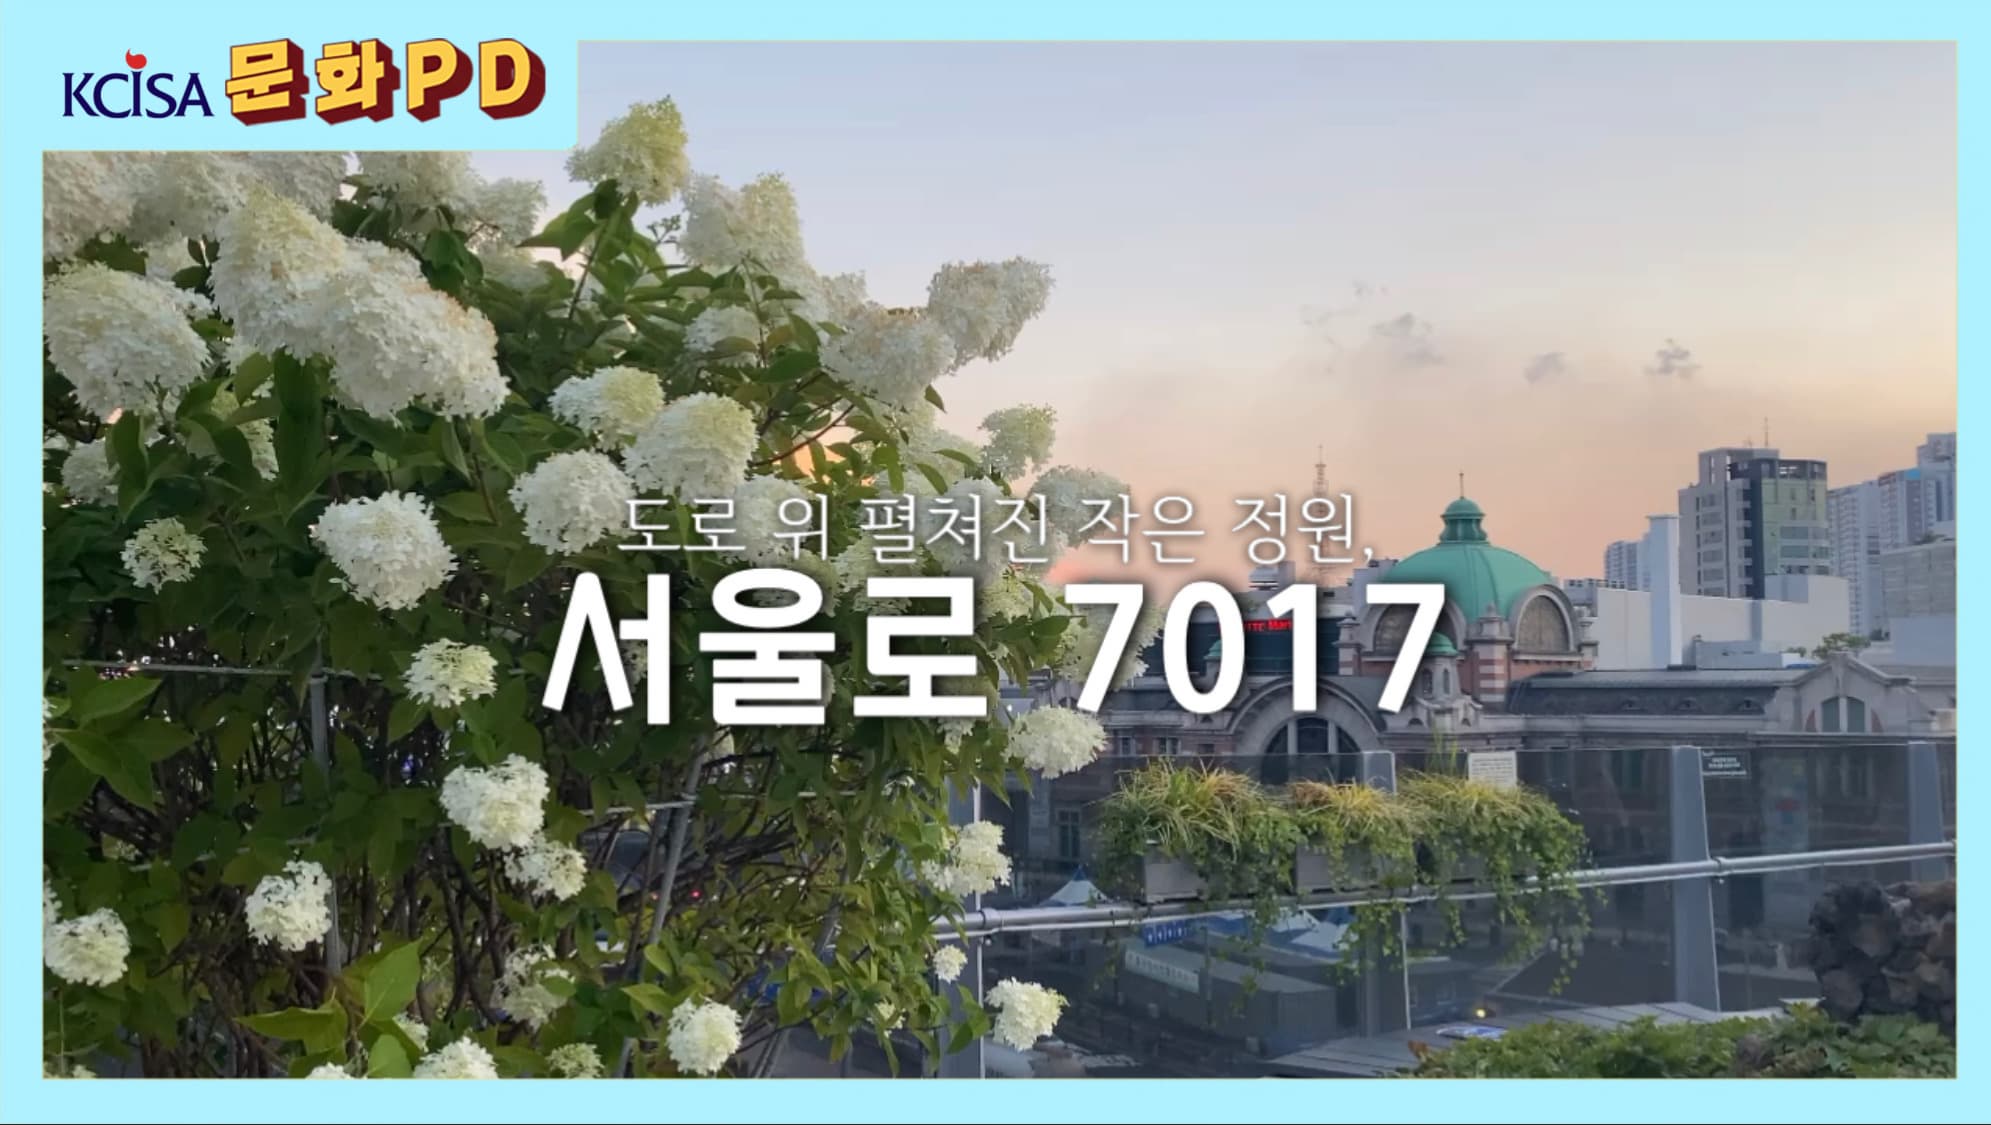 [문화PD] 도로 위 펼쳐진 작은 정원, 서울로 7017